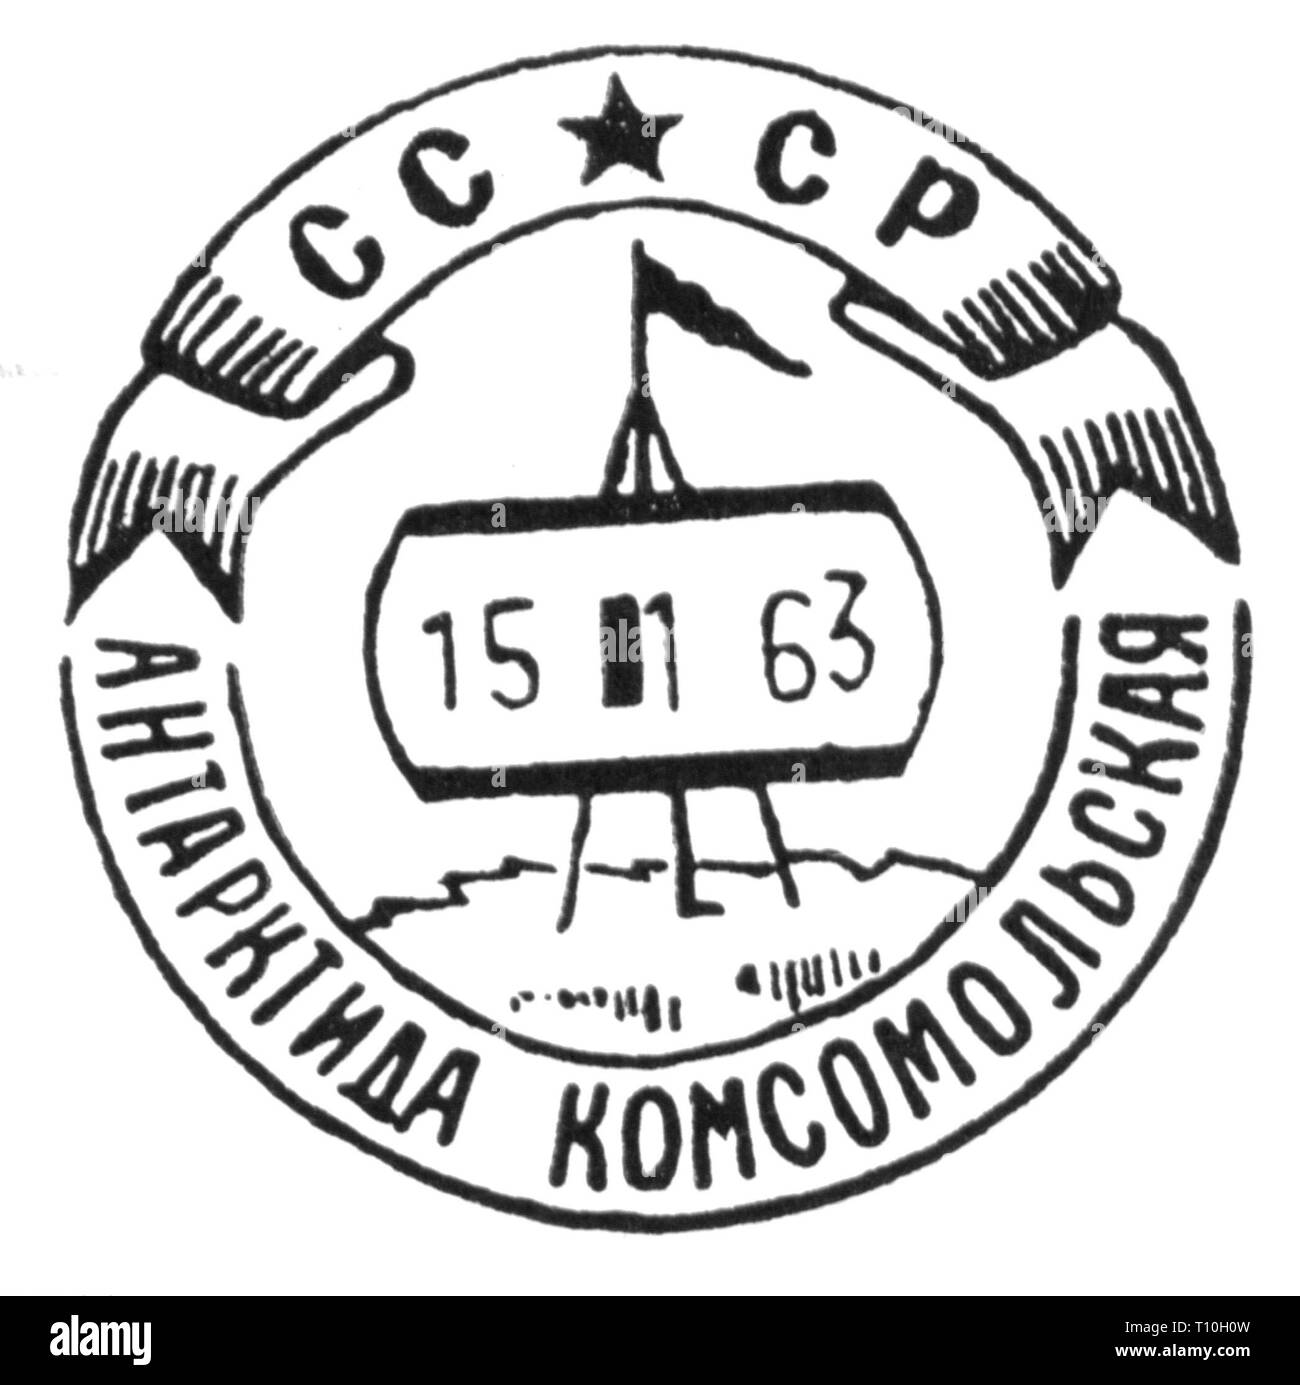 Mail, marques postales, la Russie, de l'oblitération spéciale station antarctique soviétique Komsomolskaya, 15.1.1963, l'artiste n'a pas d'auteur pour être effacé Banque D'Images